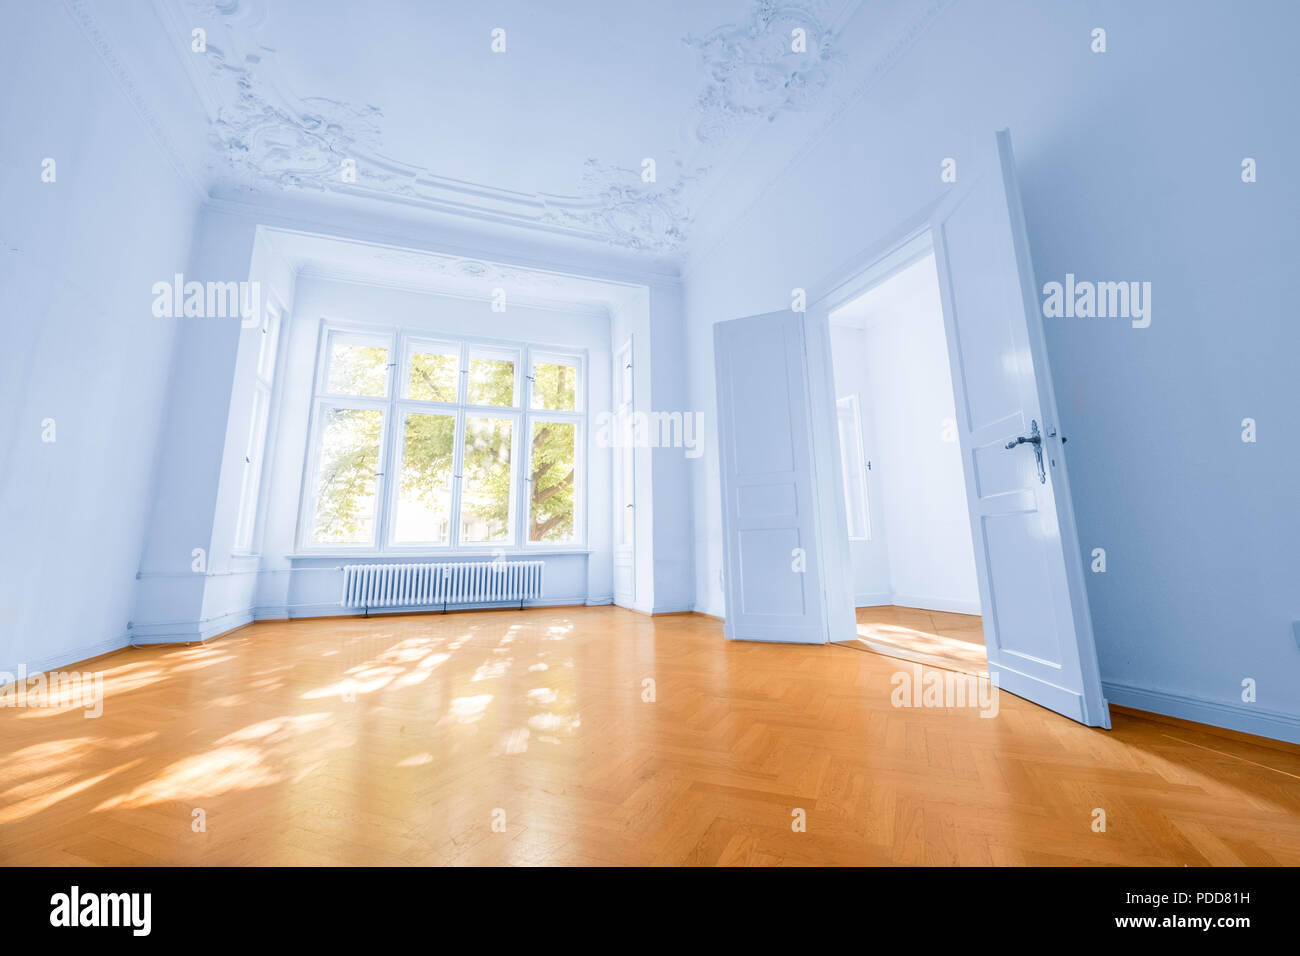 Chambre à vide bel appartement avec parquet au sol - intérieur Immobilier Banque D'Images